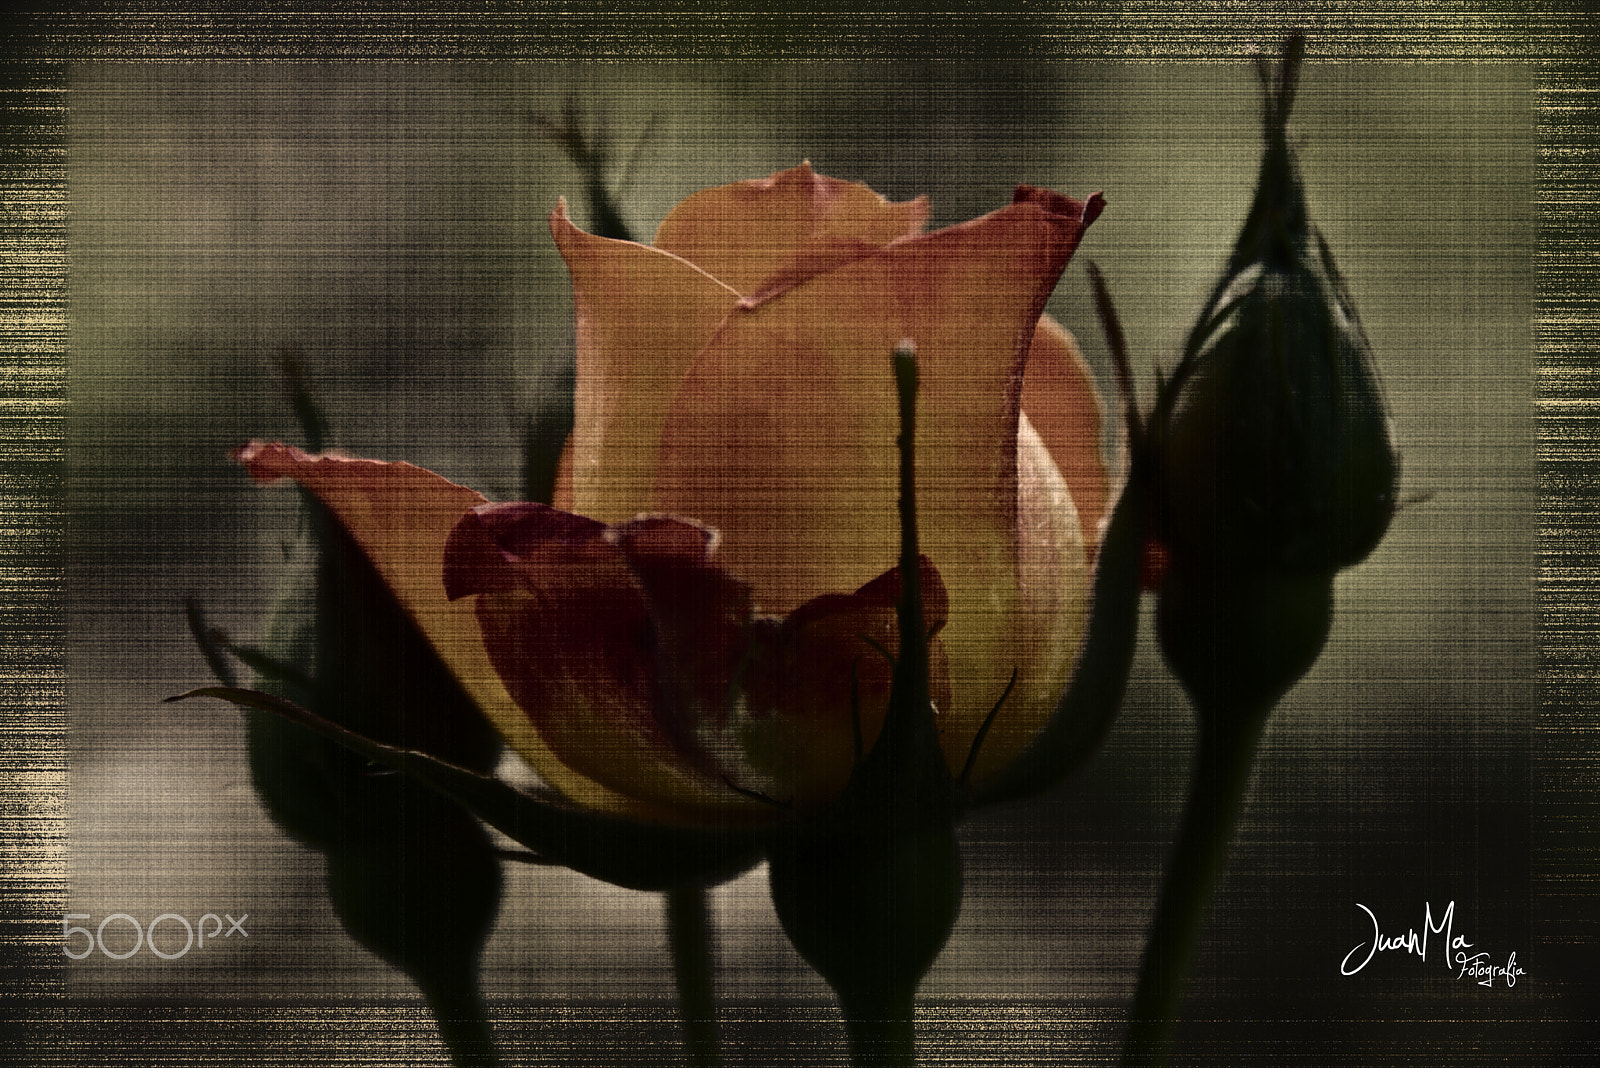 Pentax K100D Super + Sigma sample photo. Una rosa para el amor: photography